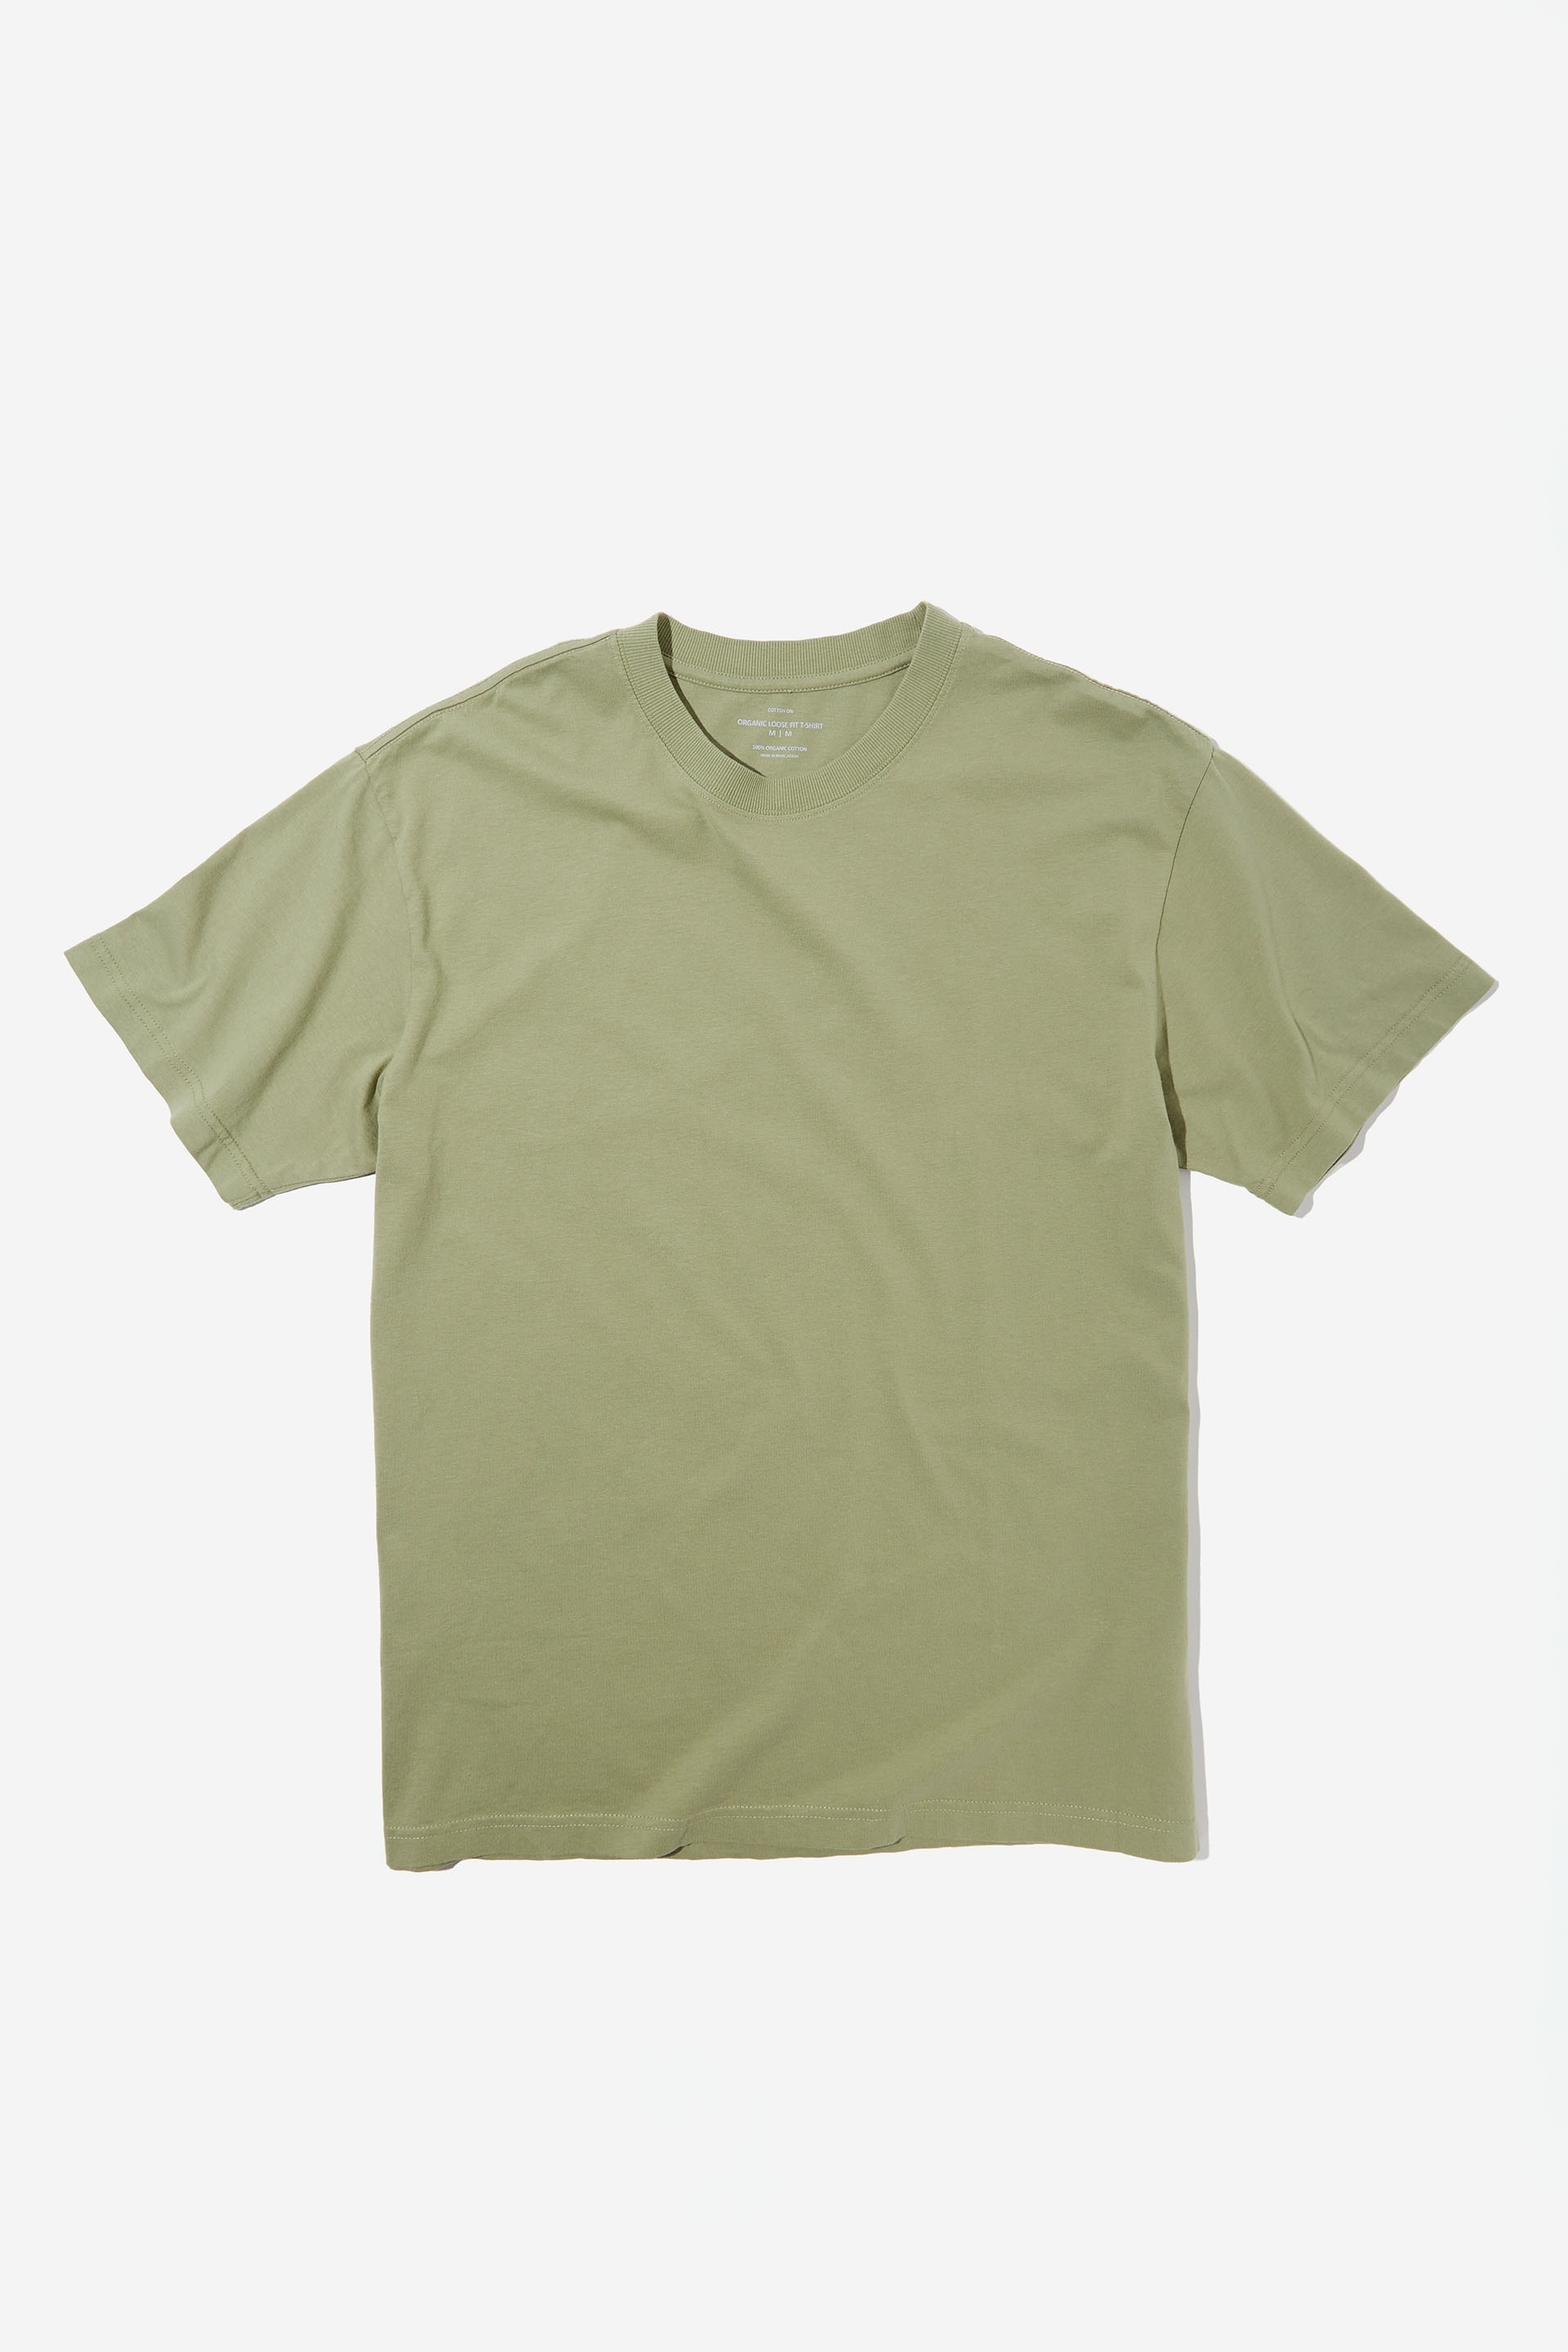 Cotton On Men - Organic Loose Fit T-Shirt - Sage